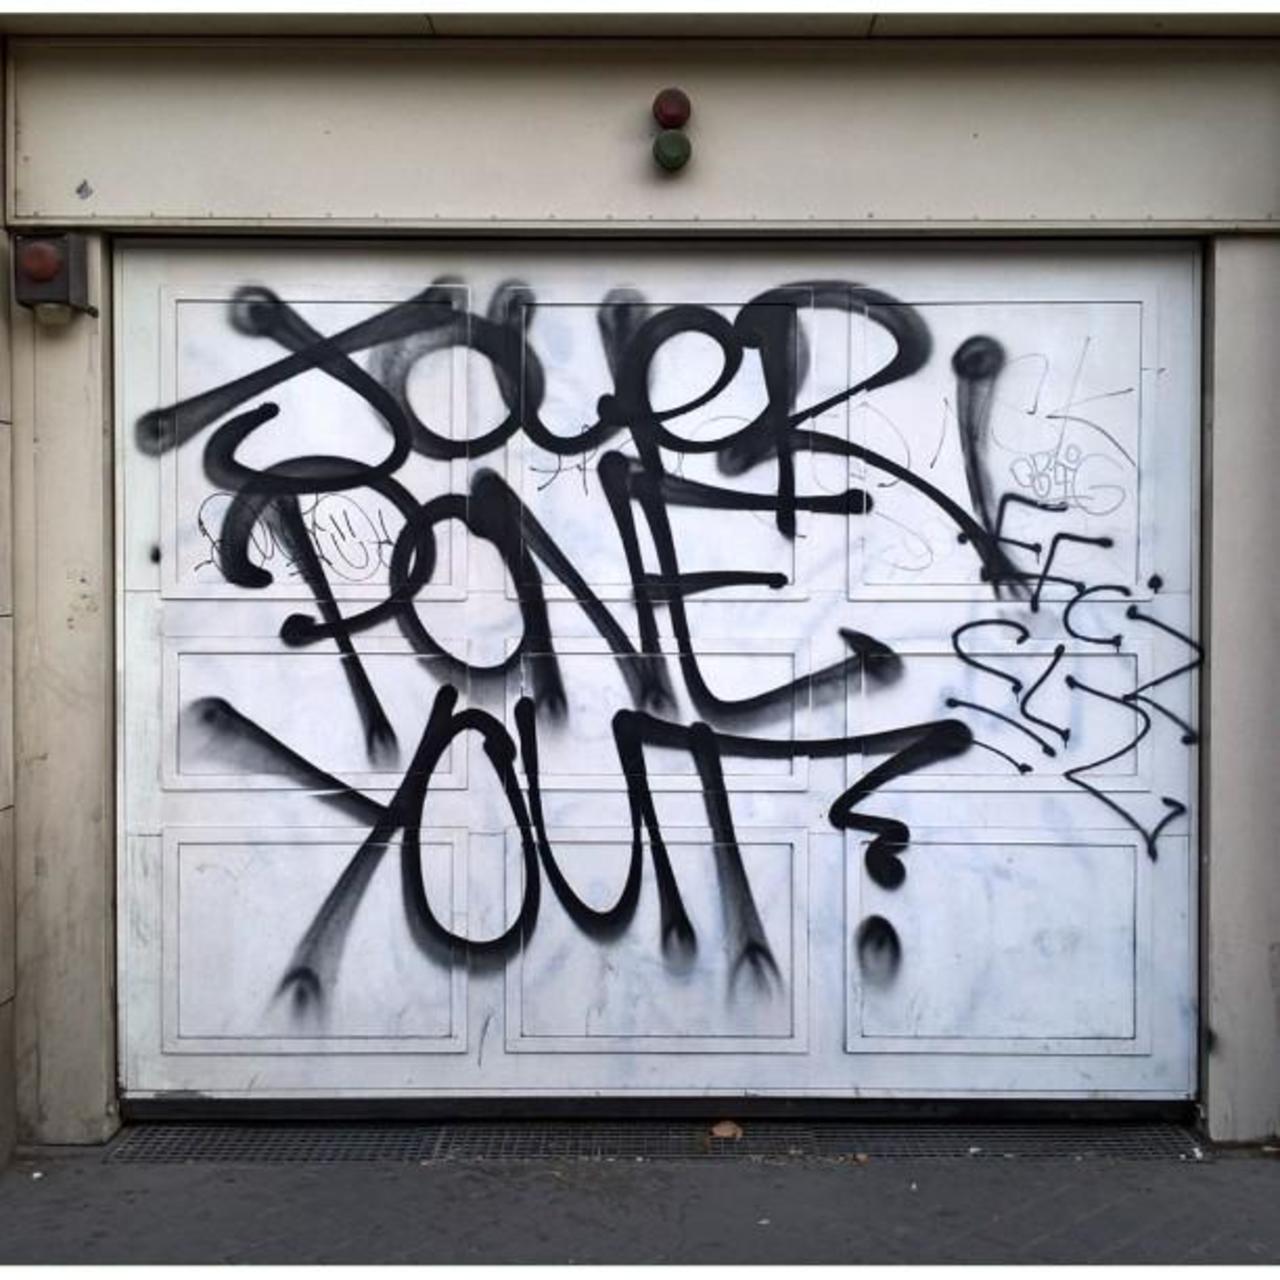 #Paris #graffiti photo by maxdimontemarciano http://ift.tt/1Qexu6p #StreetArt http://t.co/2M7SRBzAO2 https://goo.gl/7kifqw